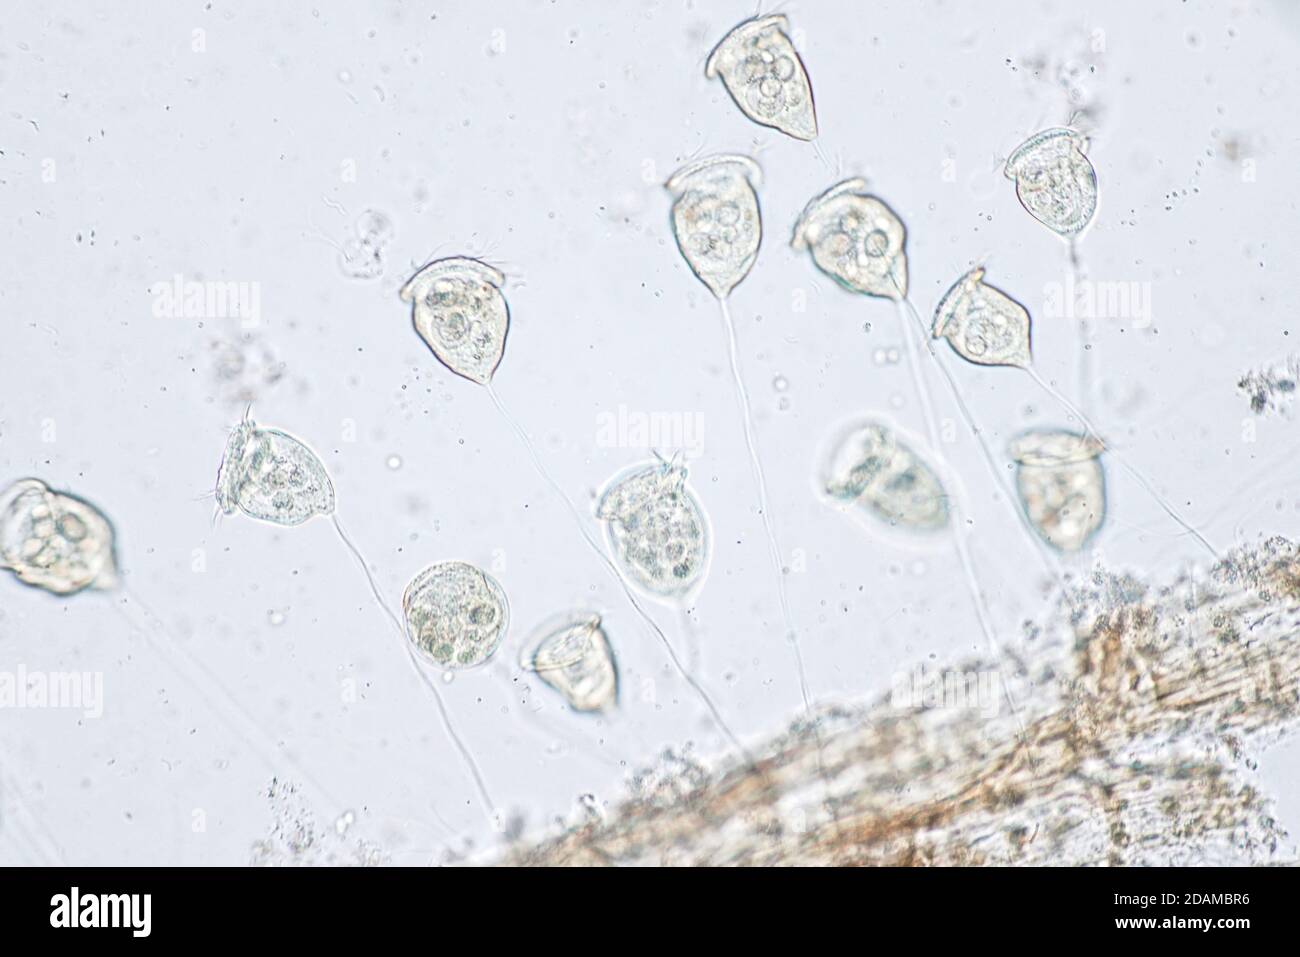 Vorticella protozoa, light micrograph. Stock Photo